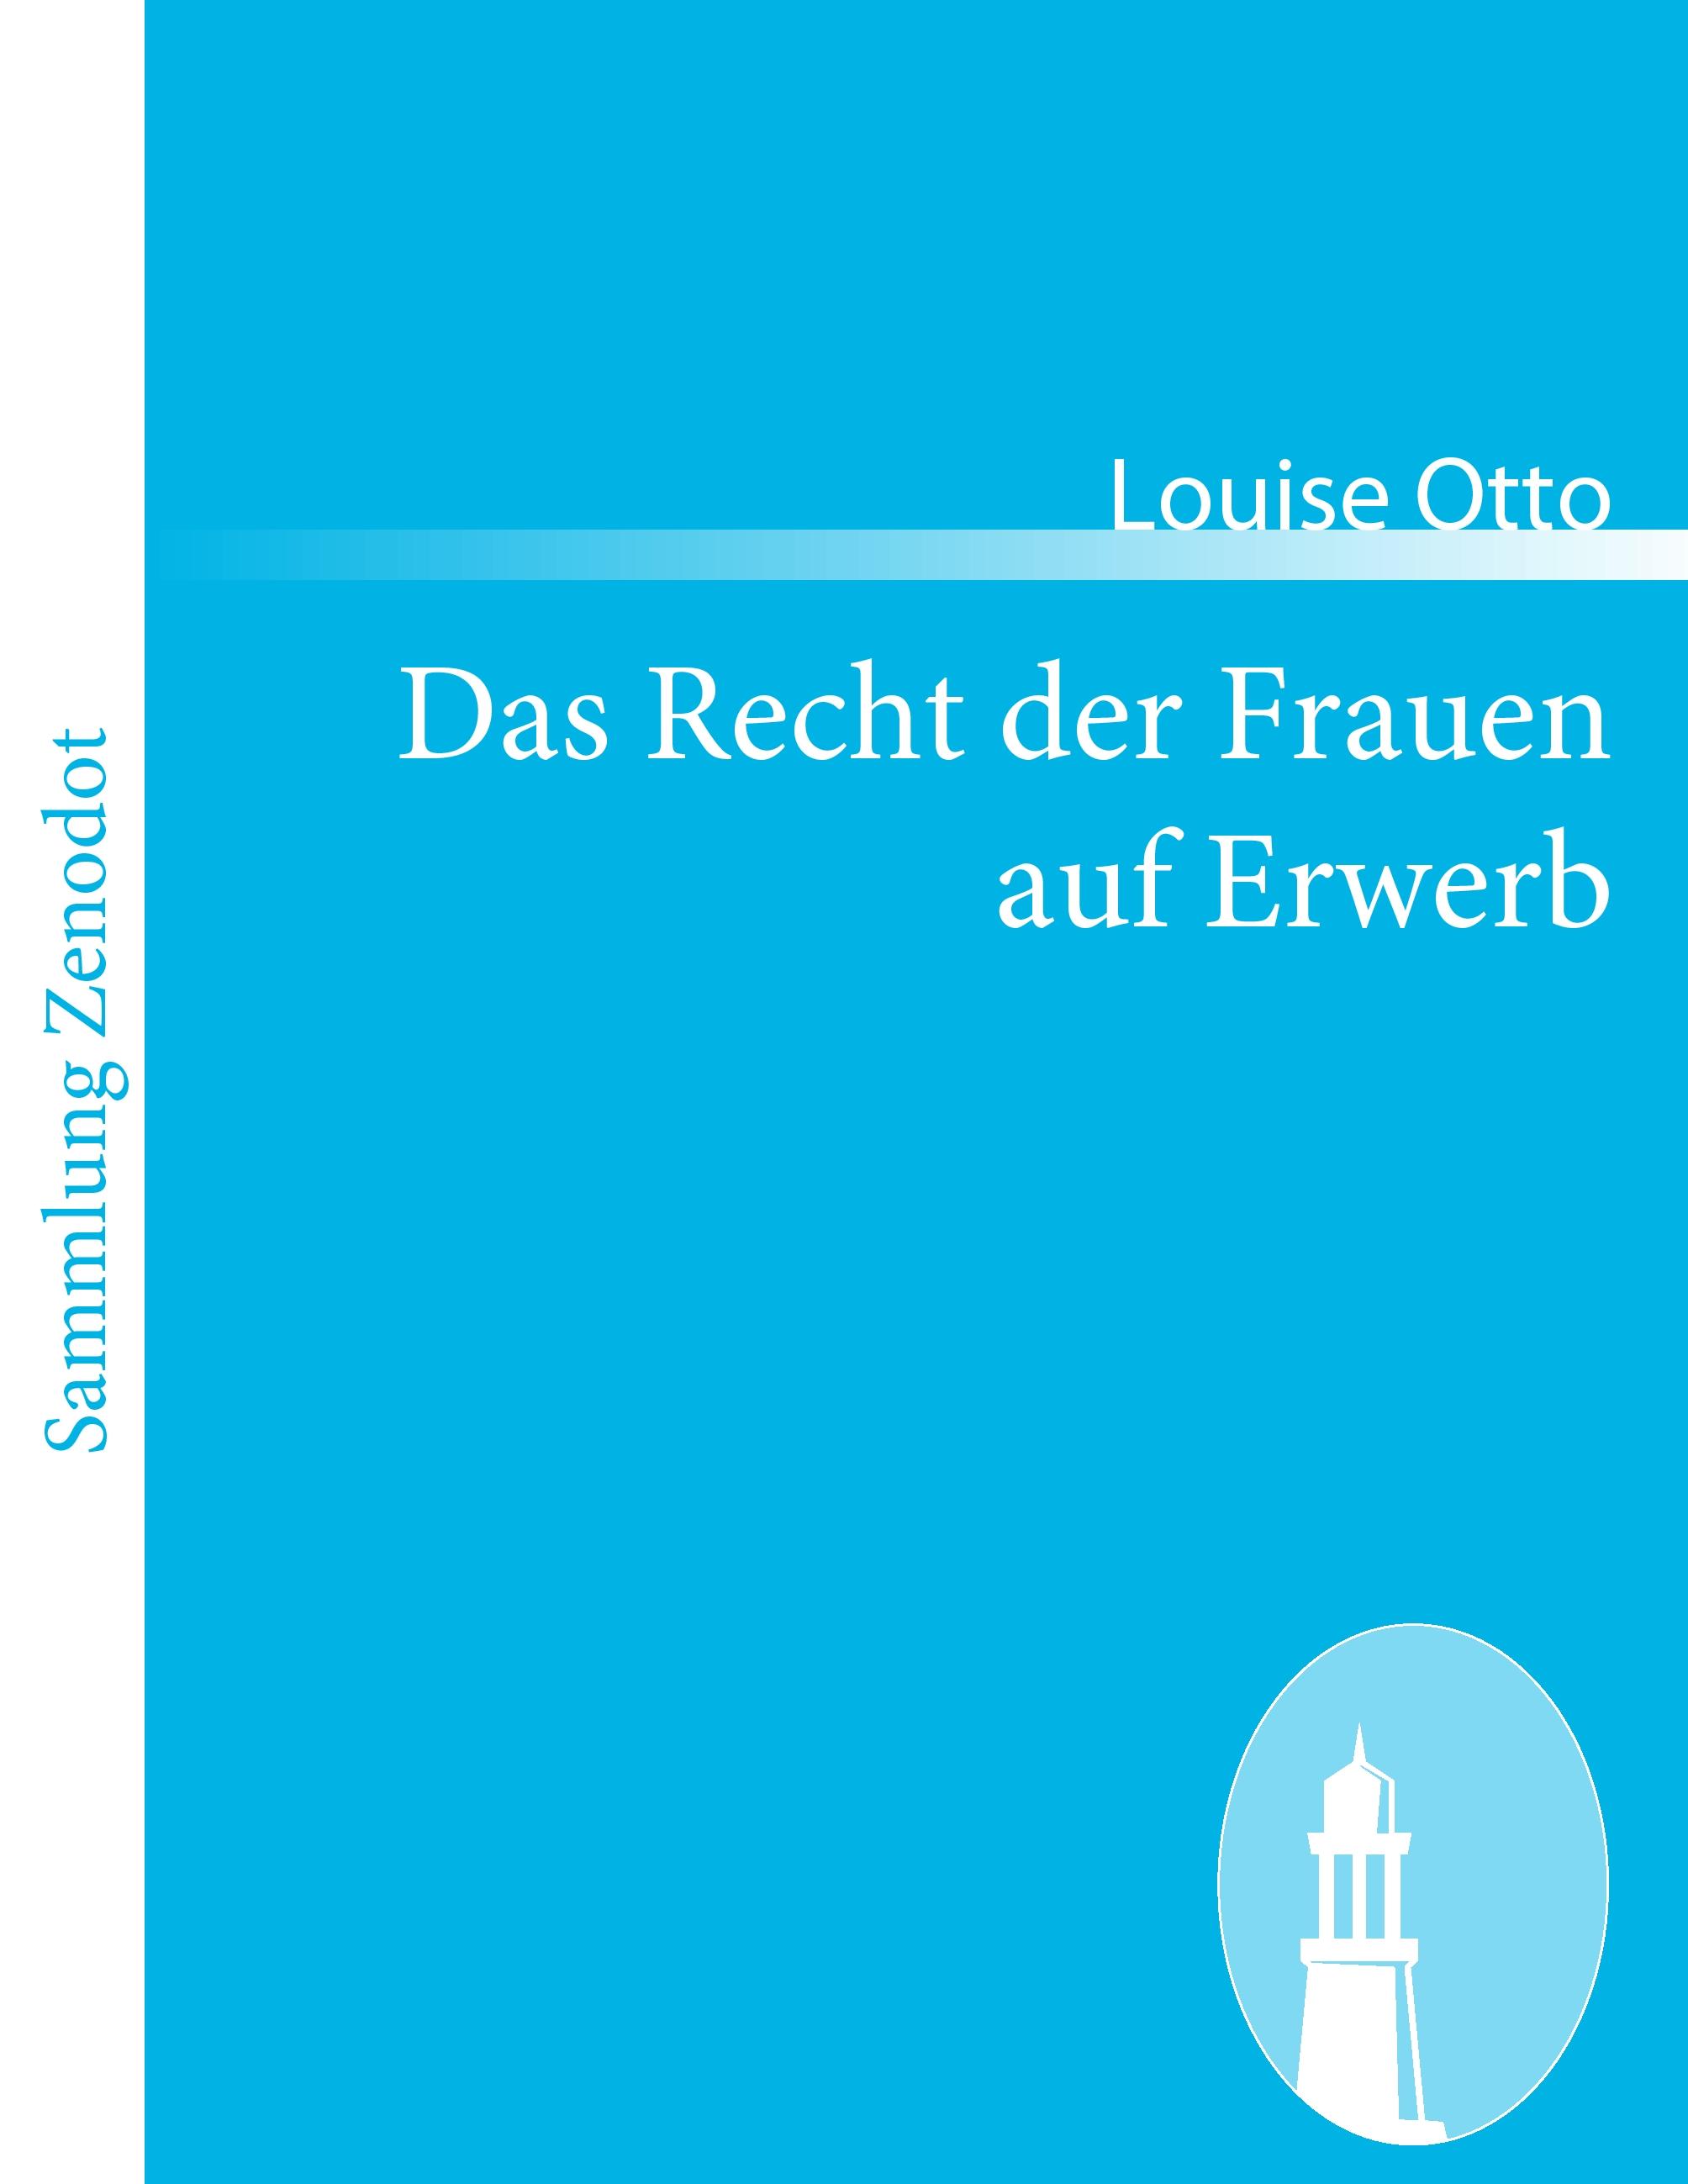 Das Recht der Frauen auf Erwerb  Blicke auf das Frauenleben der Gegenwart  Louise Otto  Taschenbuch  Paperback  Deutsch  2010 - Otto, Louise